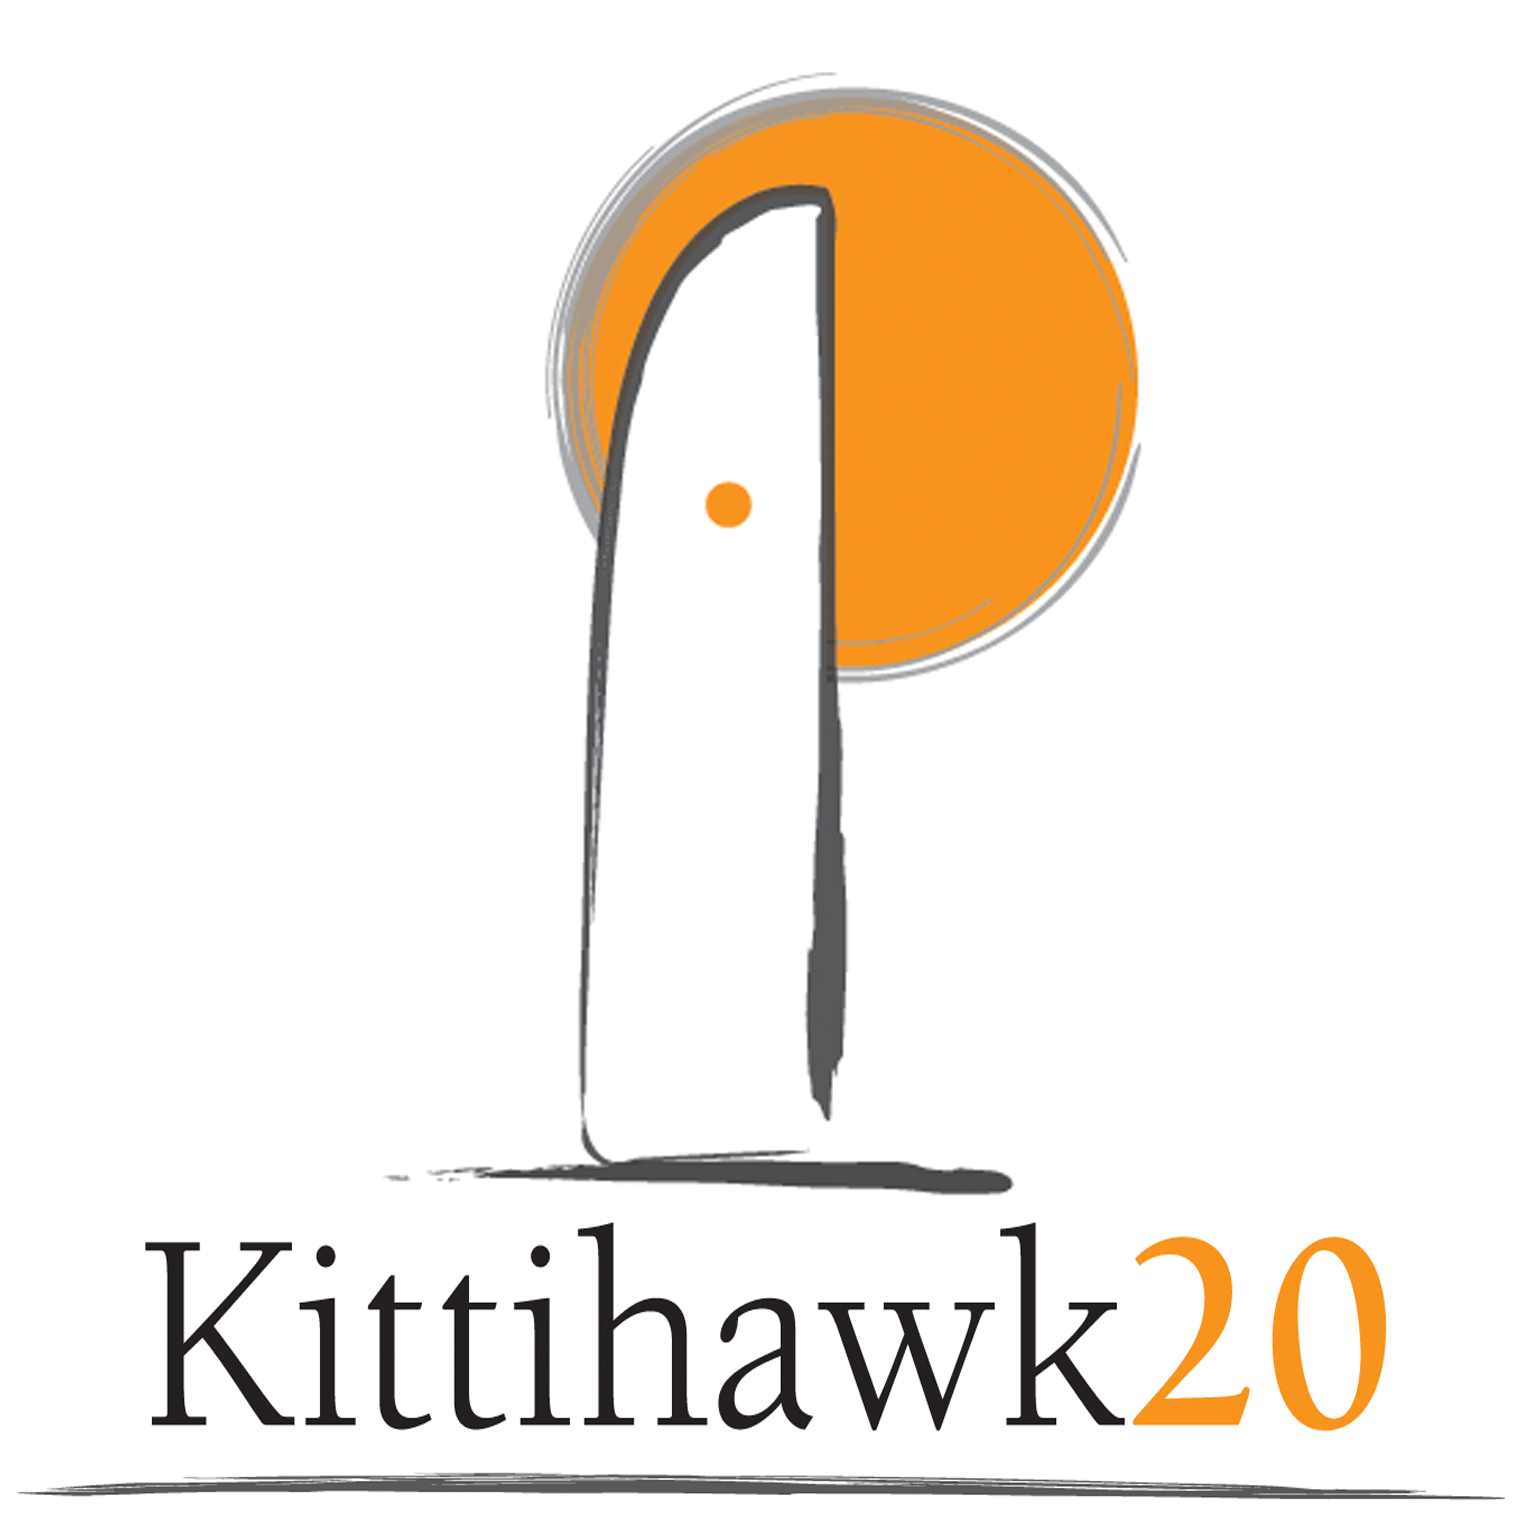 Kittihawk20 Corporation